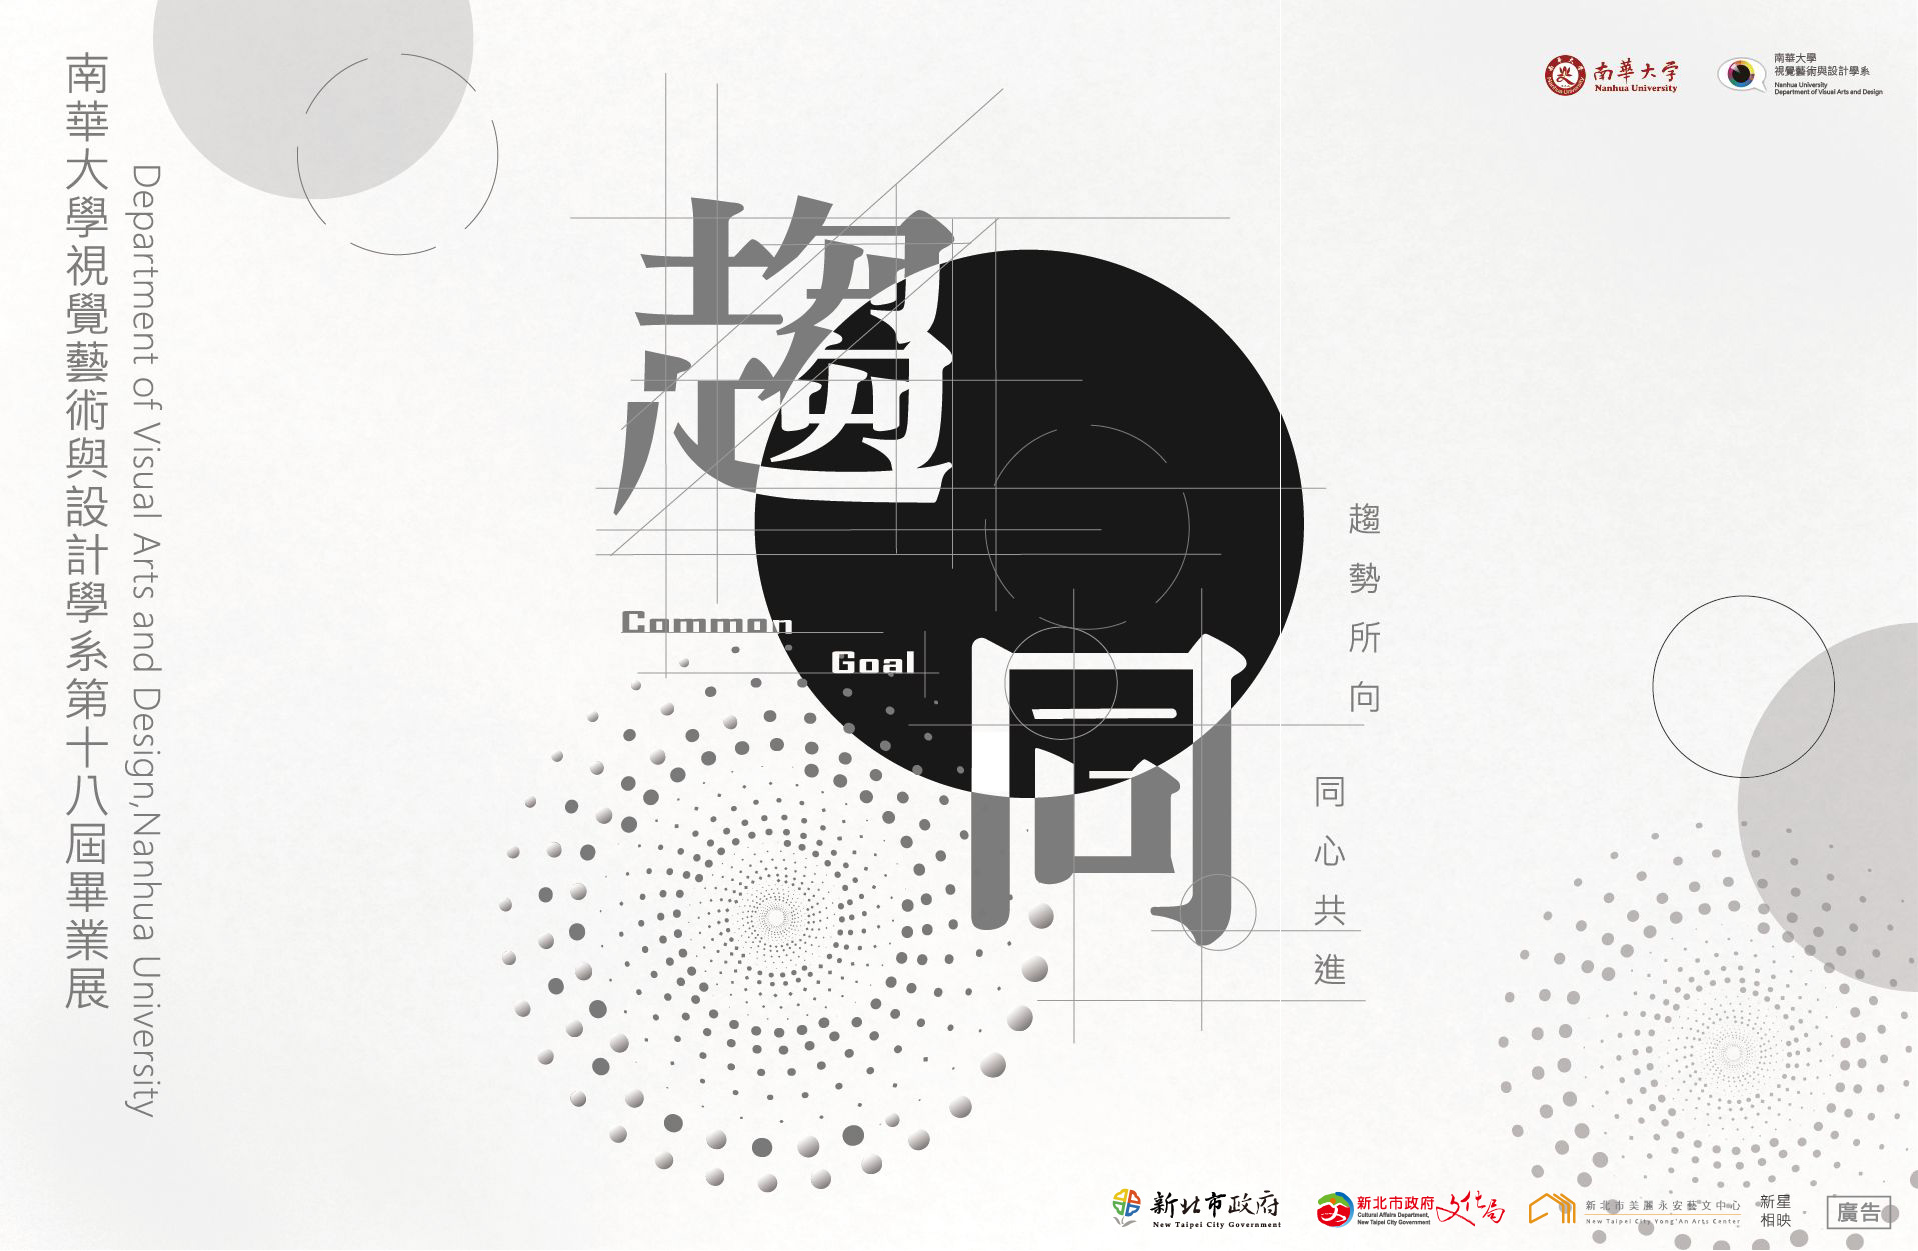 「新星相映」-2024新北市學校合作計畫:南華大學視覺與設計學系第十八屆畢業展《趨同》